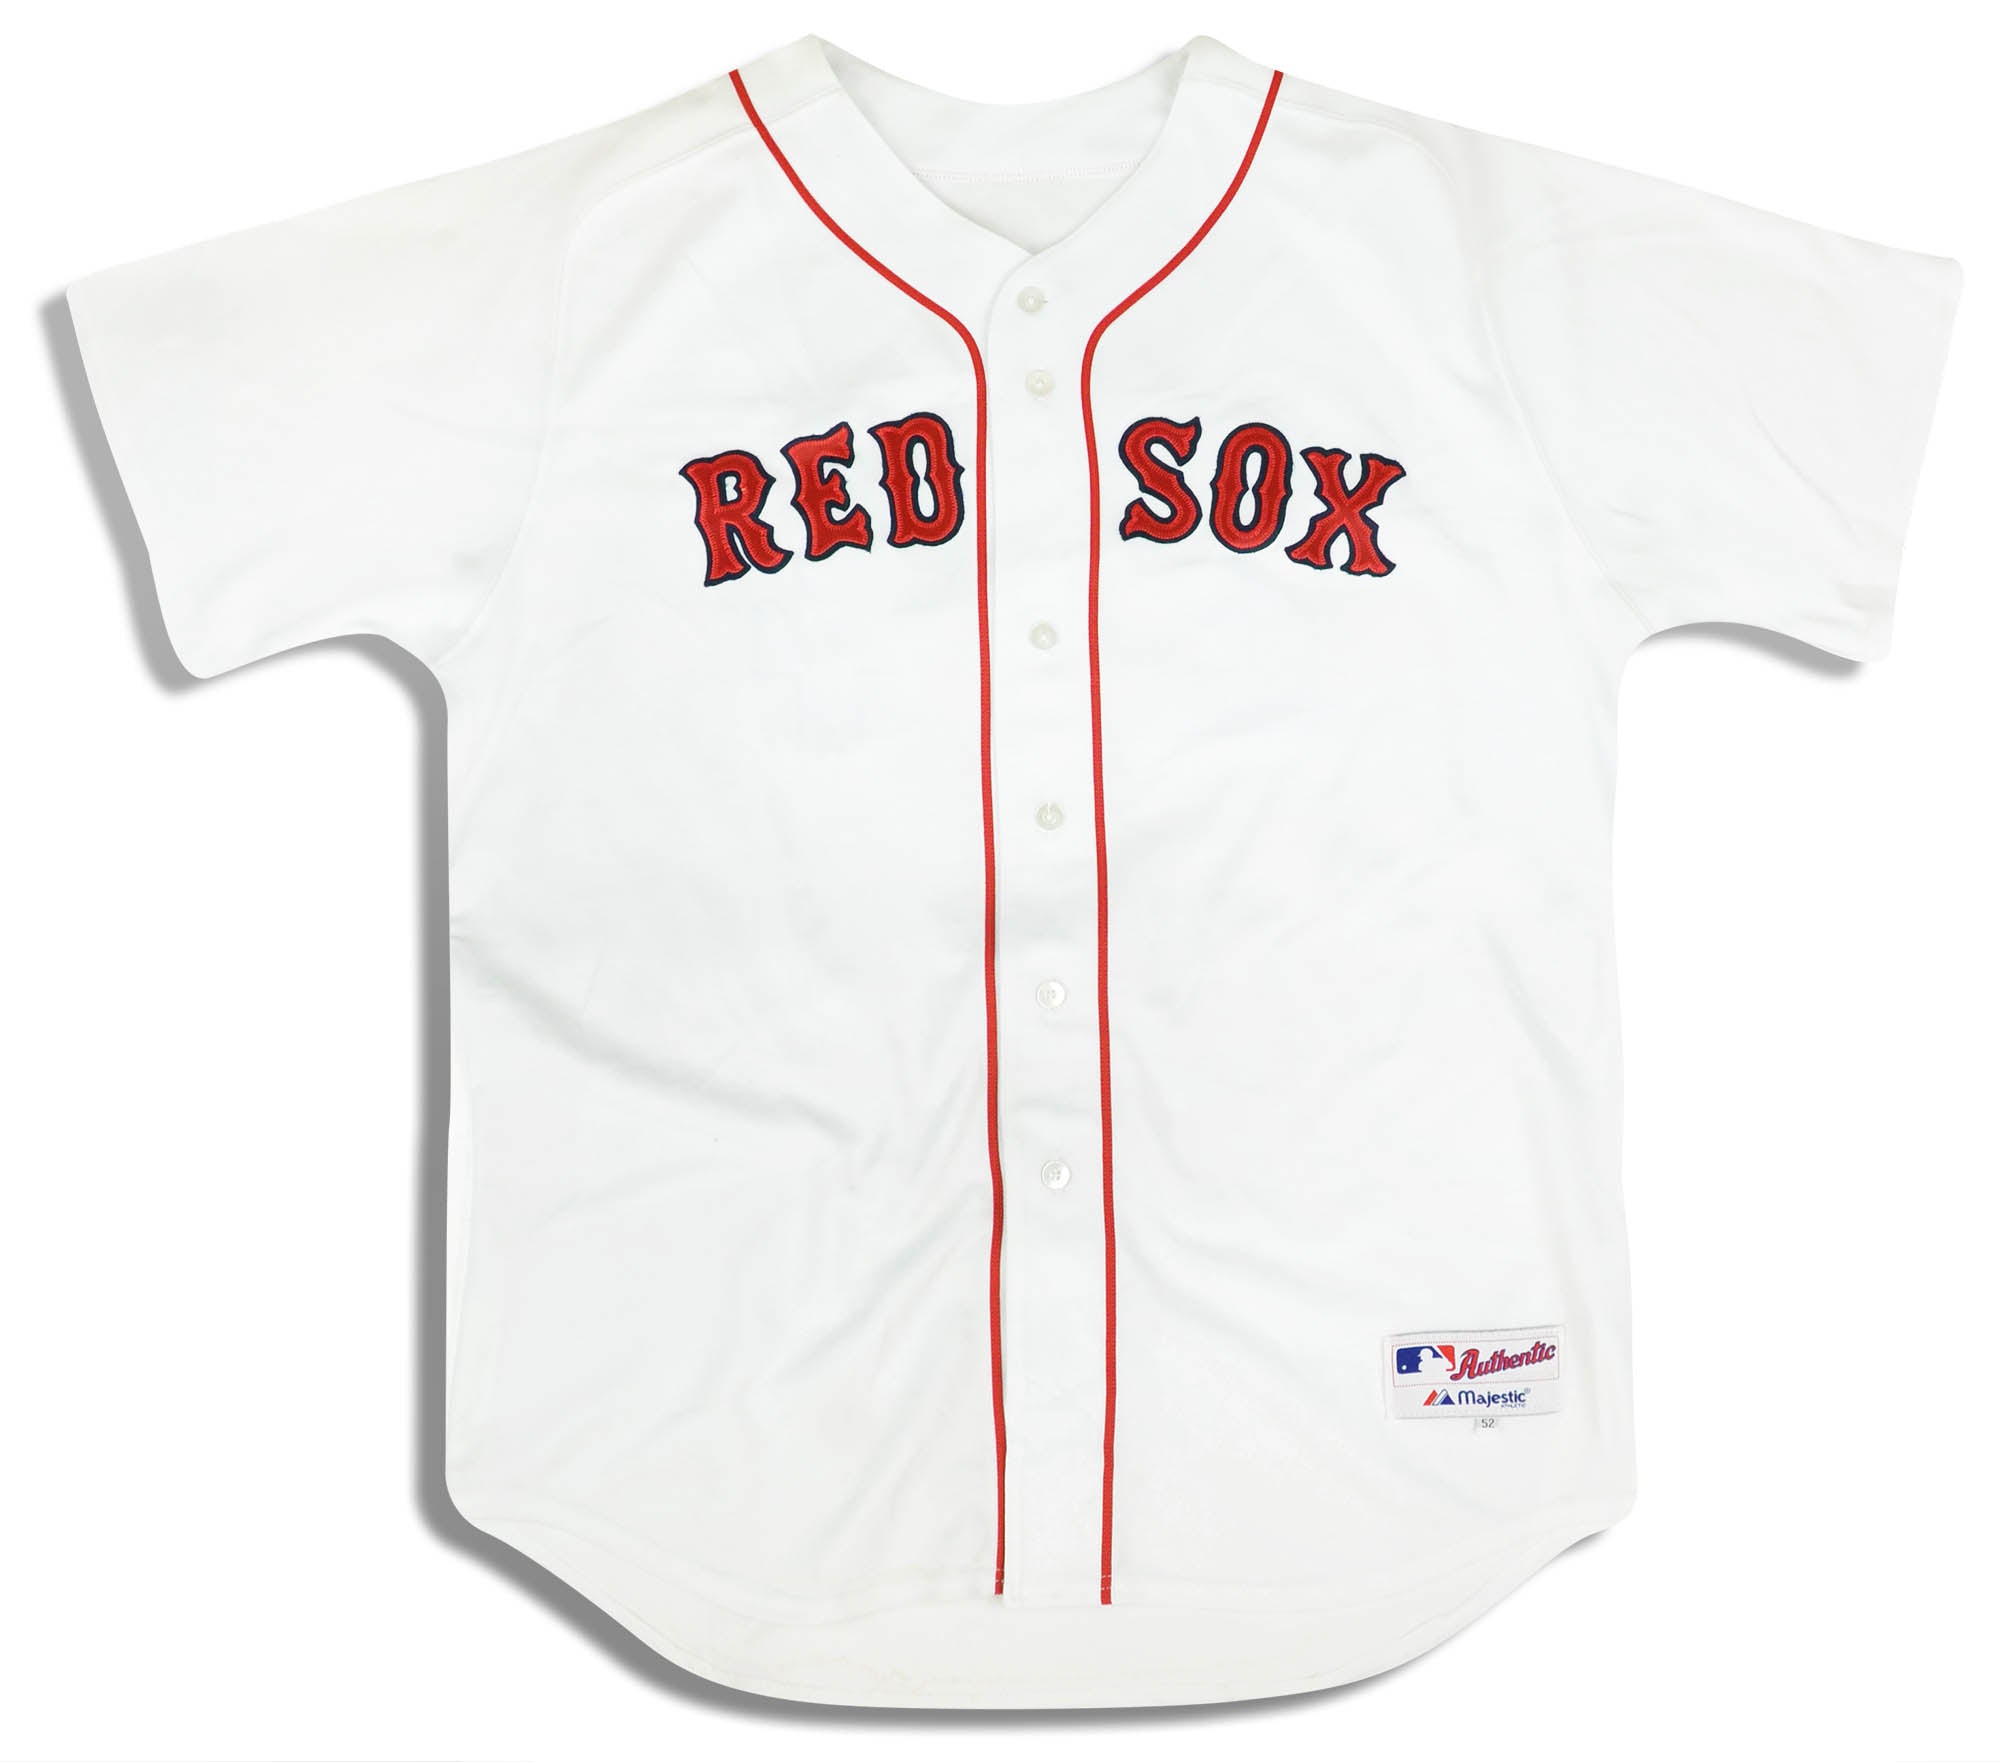 2005-08 BOSTON RED SOX RAMIREZ #24 AUTHENTIC MAJESTIC JERSEY (HOME) XXL